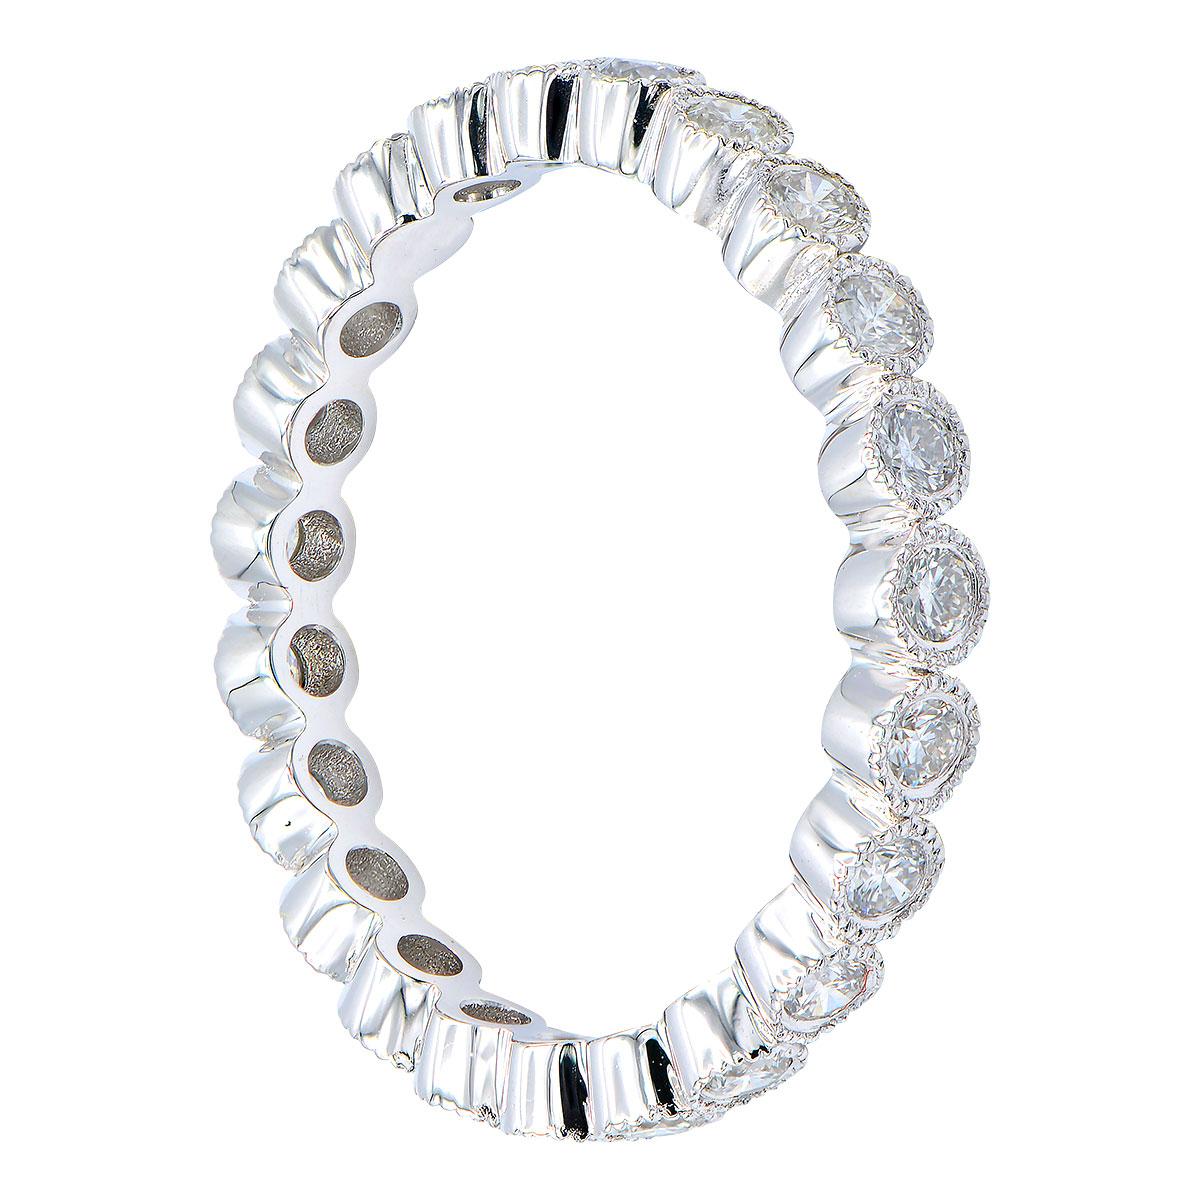 Ce magnifique anneau d'éternité comporte 23 diamants ronds de couleur VS2, G, d'une valeur totale de 0,42 ct, sertis dans 1,9 g d'or blanc 18 carats. Les diamants font tout le tour de l'anneau et sont entourés d'un magnifique travail d'orfèvrerie